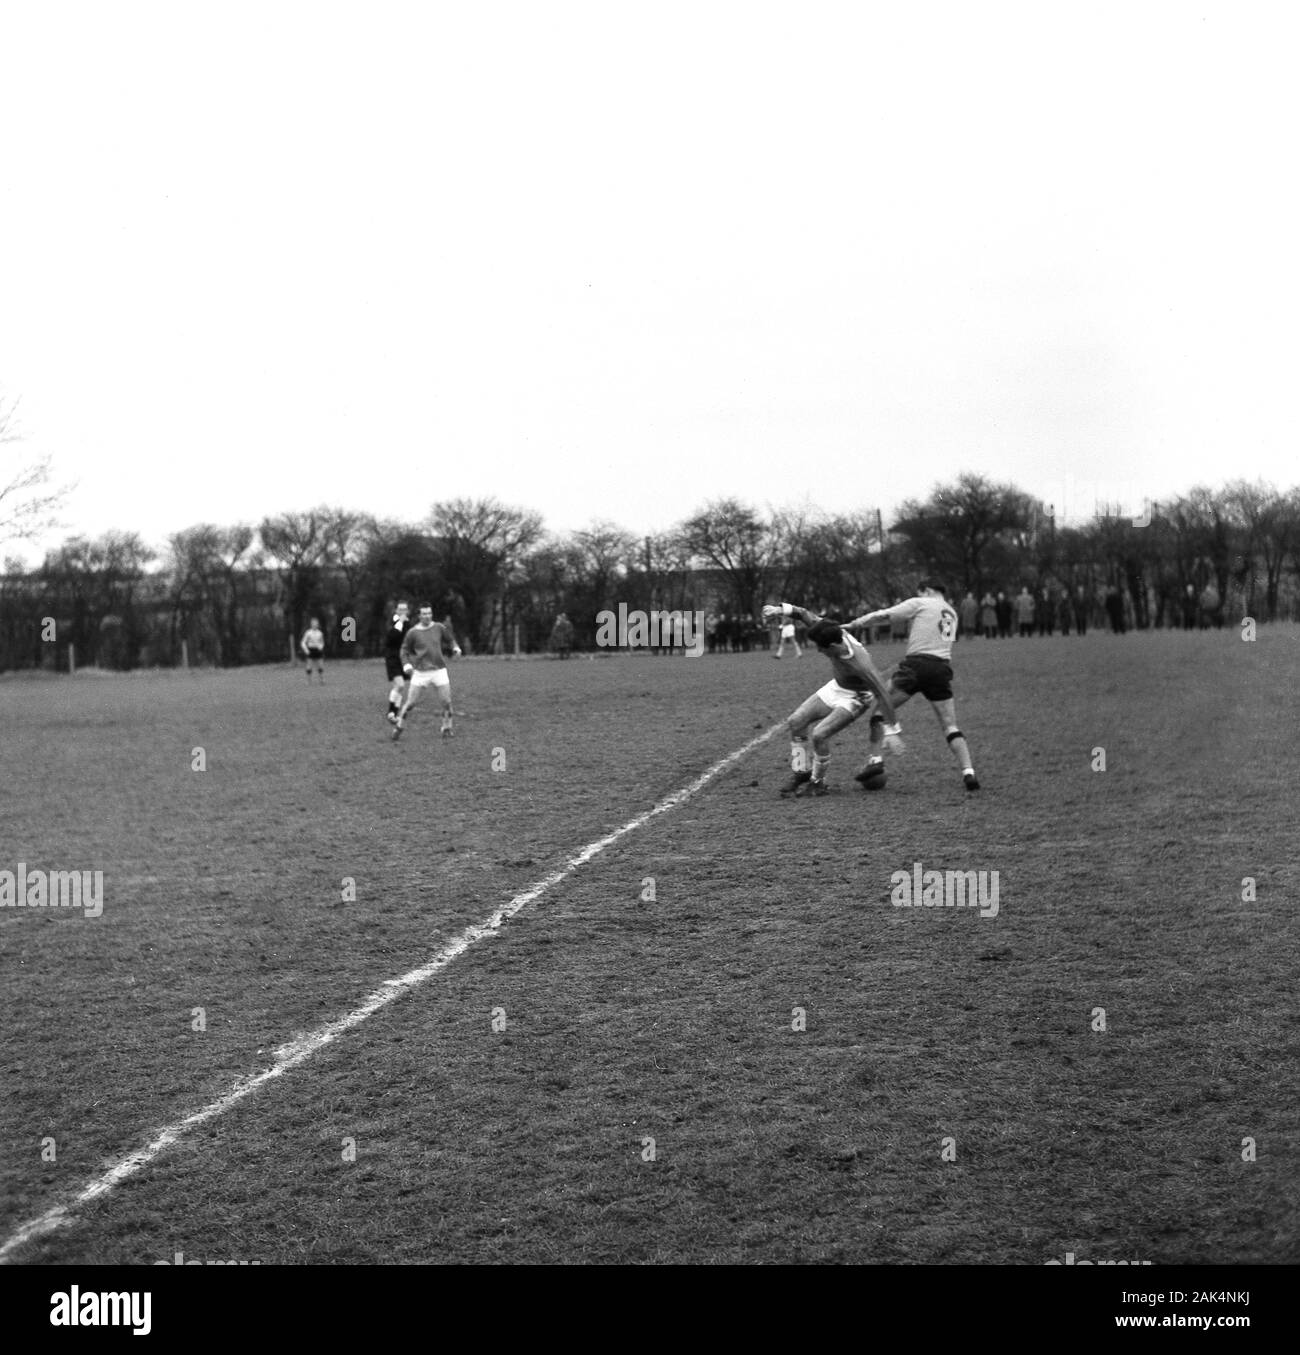 Anni sessanta, storico calciatori dilettanti giocando su un prato passo fangoso tipico dell'epoca, Inghilterra, Regno Unito. Foto Stock